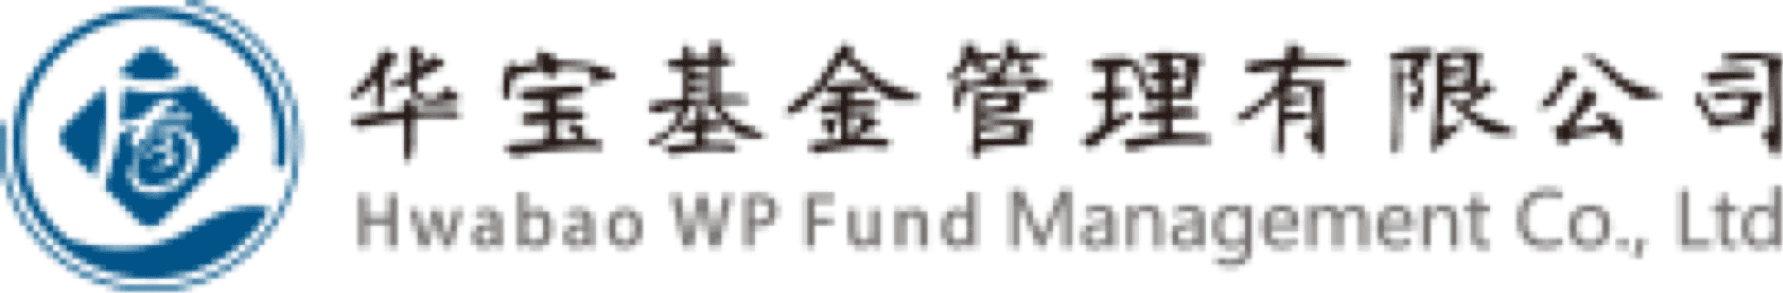 Hwabao WP Fund Management